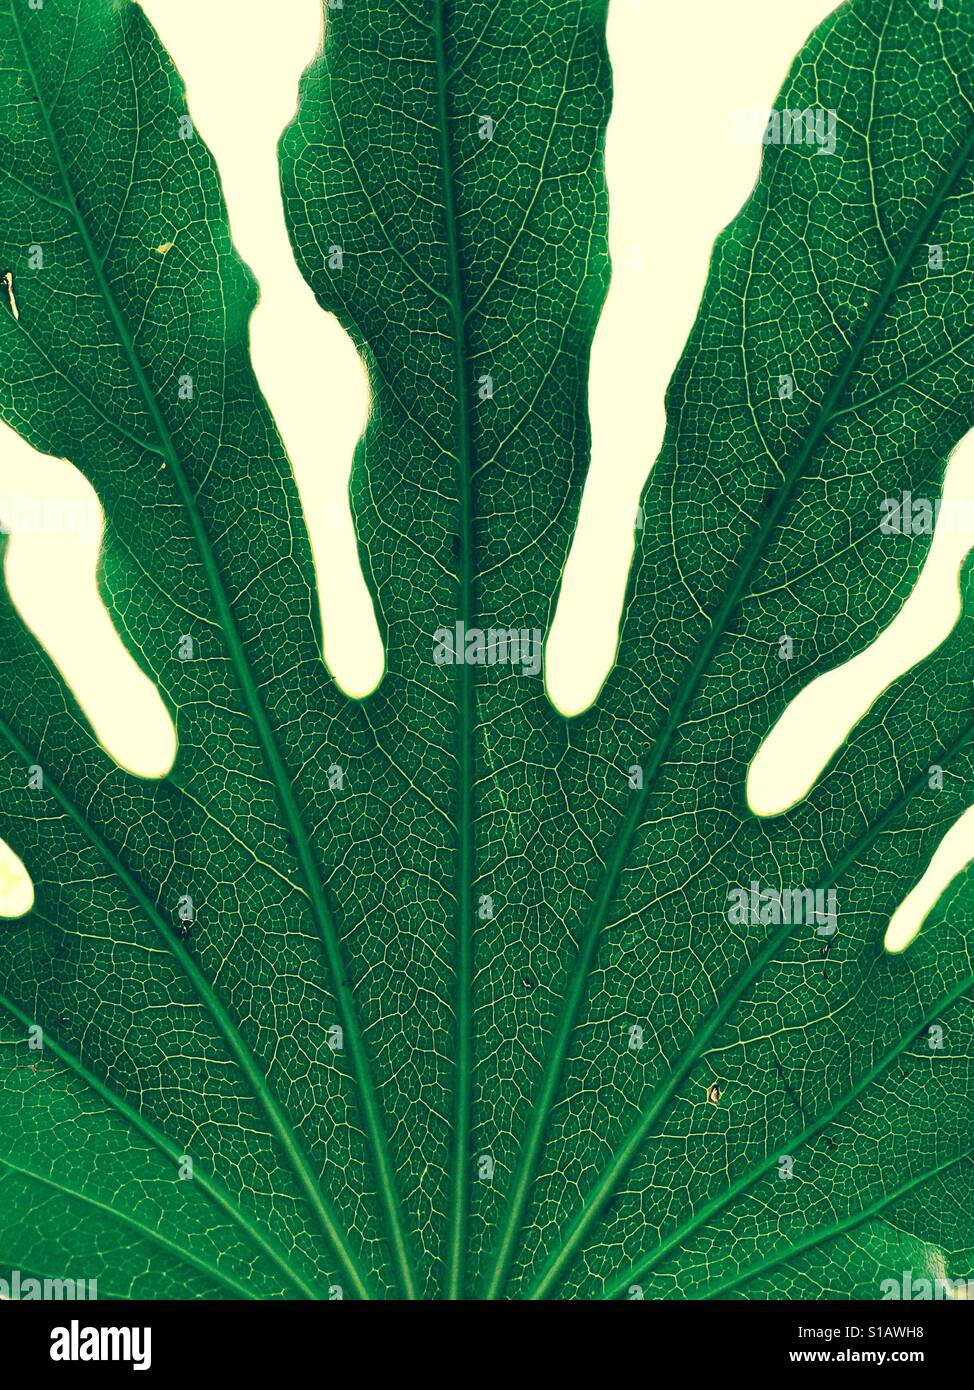 Grünes Blatt mit Venen hautnah und Blattstruktur durchschauen Stockfoto